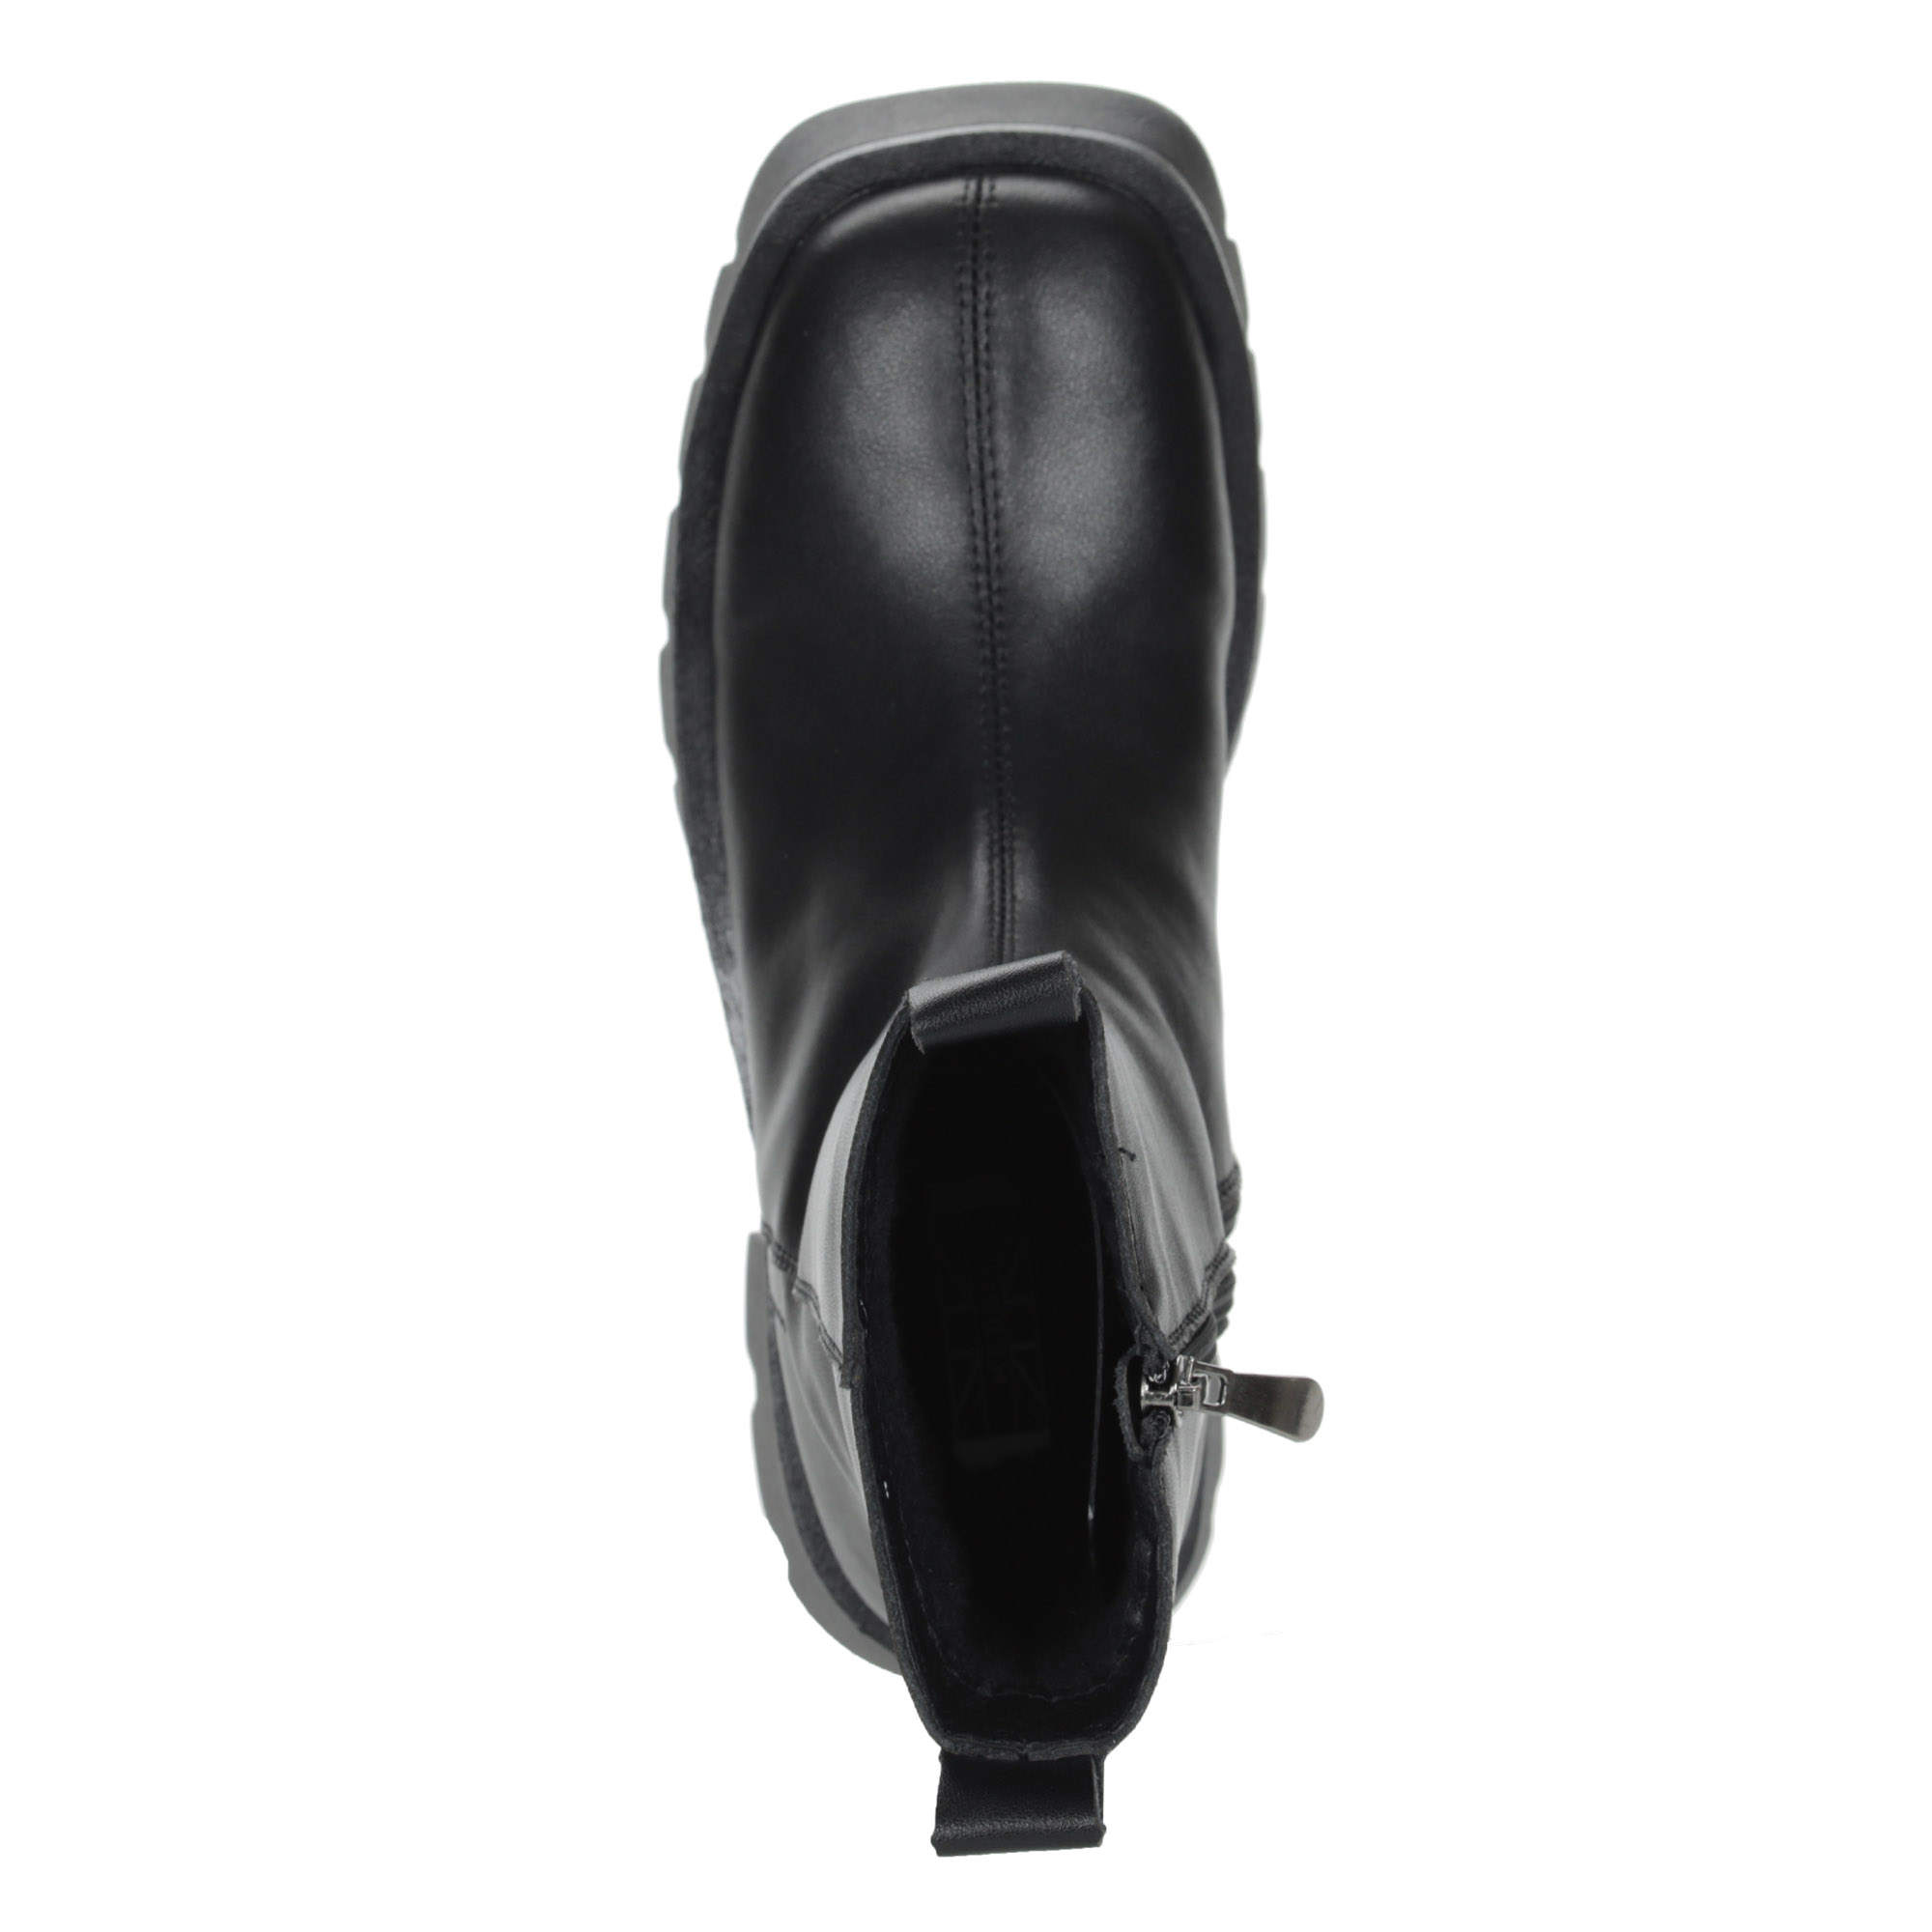 Черные ботинки из кожи на шнурках на подкладке из экошерсти на утолщенной подошве KEDDO, размер 37, цвет черный - фото 7